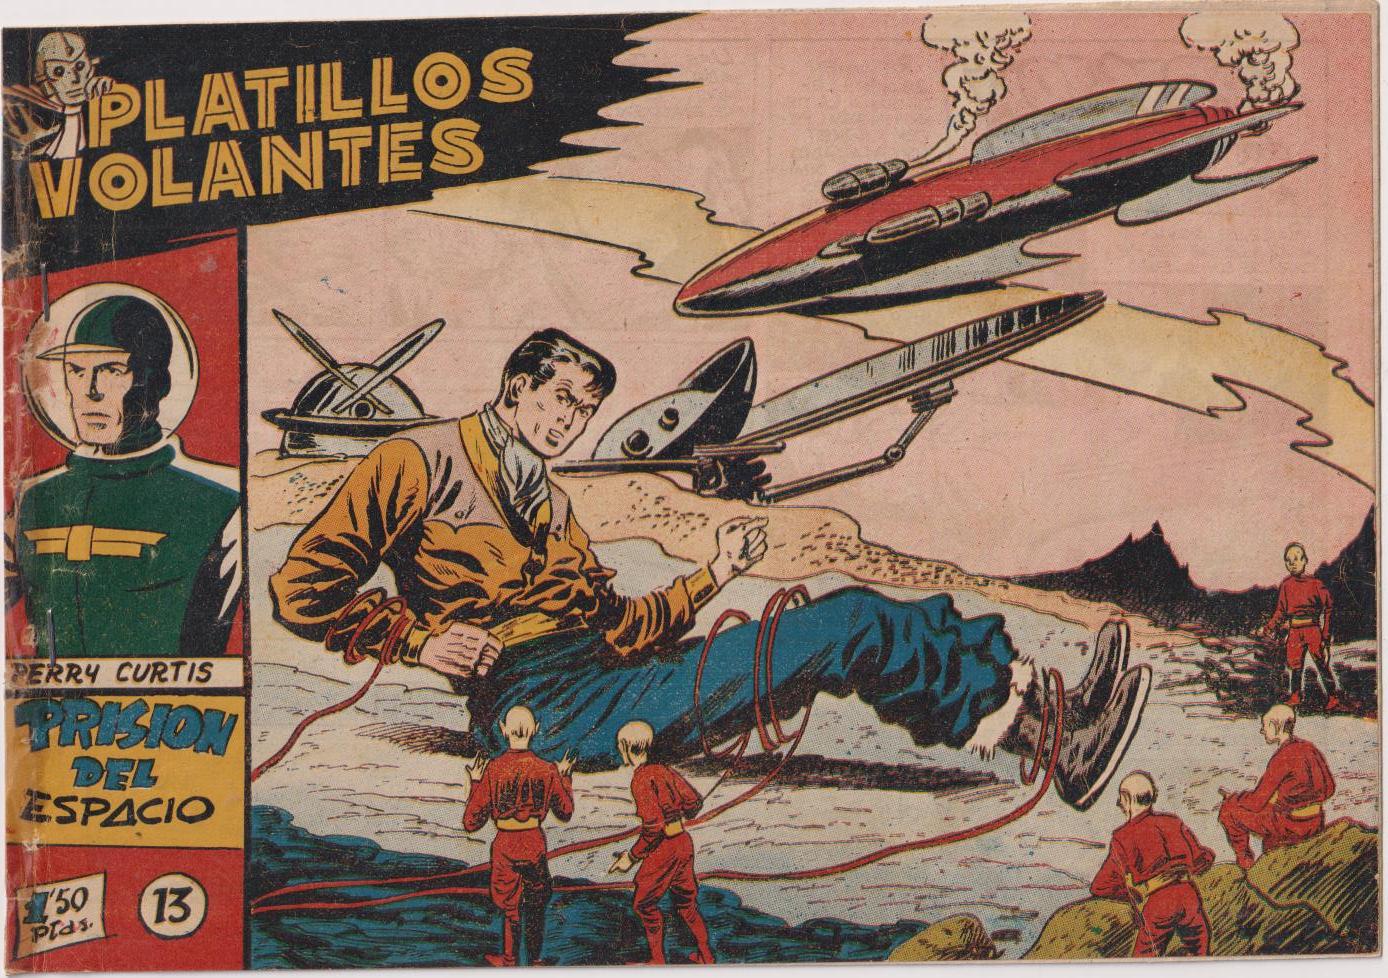 Platillos volantes nº 13. Ricart 1955